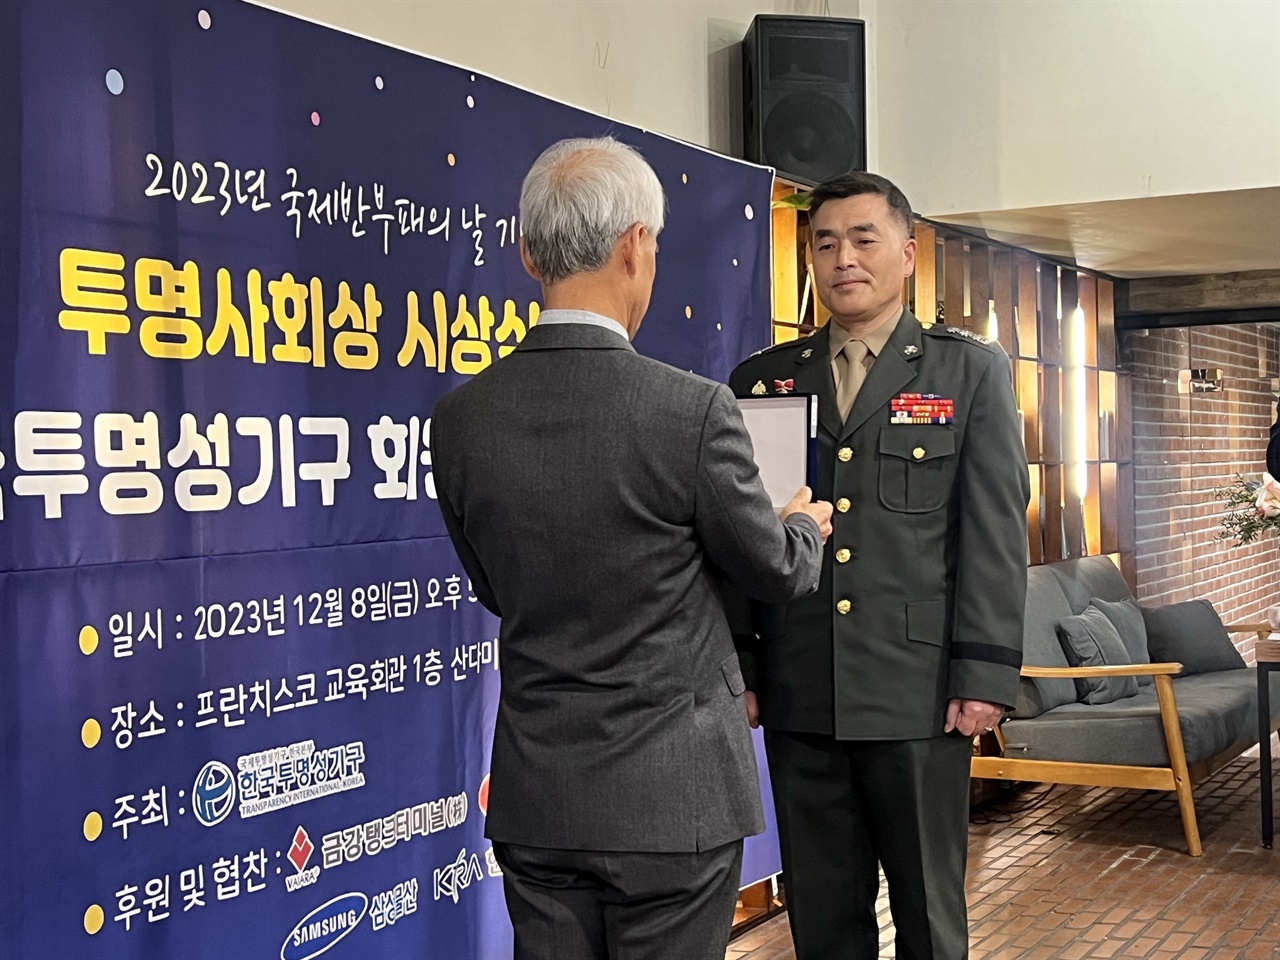 전 해병대수사단장 박정훈 대령이 8일 공익제보자에게 주는 시민단체상을 연달아 수상했다.